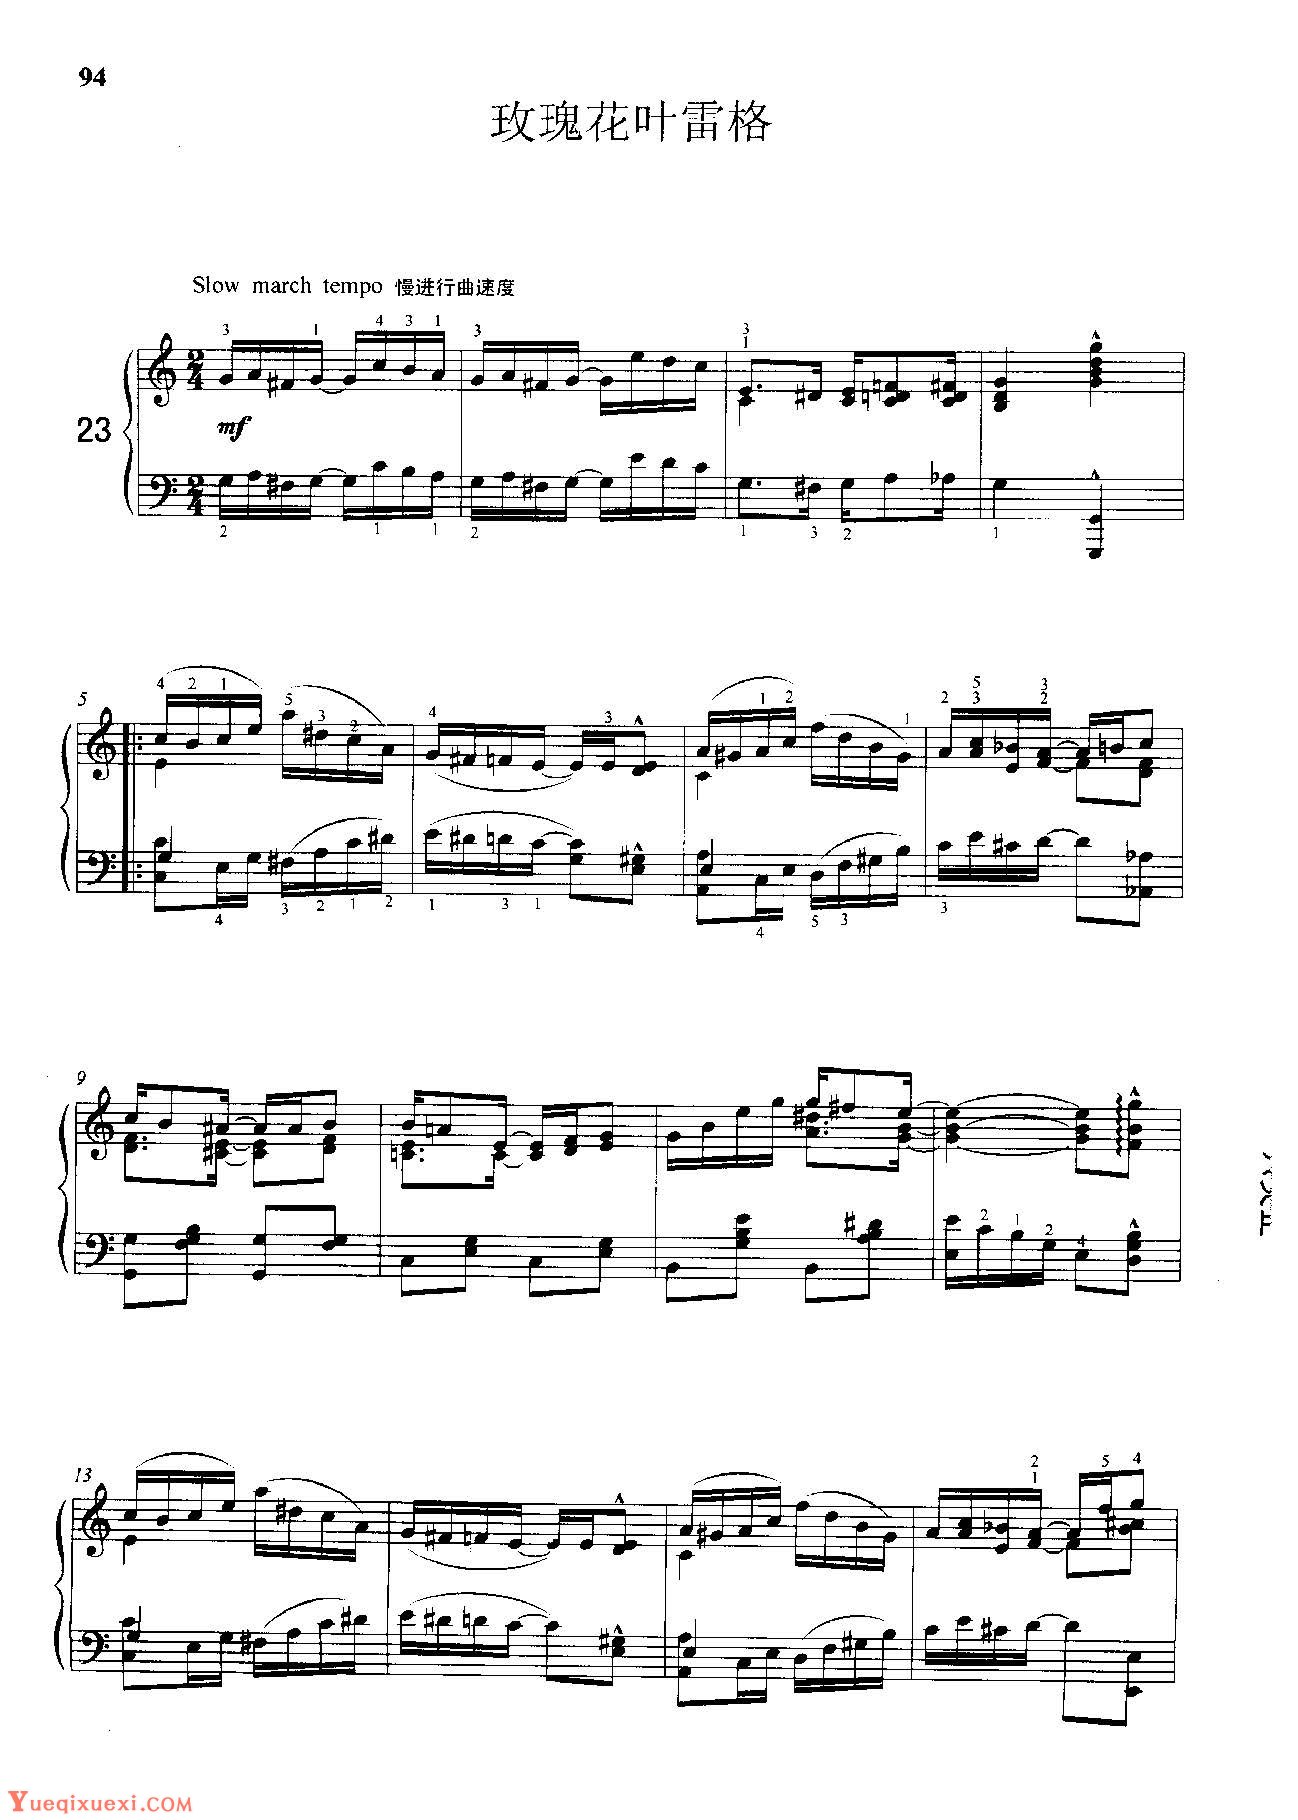 雷格泰姆钢琴乐谱《玫瑰花叶雷格》雷格泰姆之王斯科特·乔普林